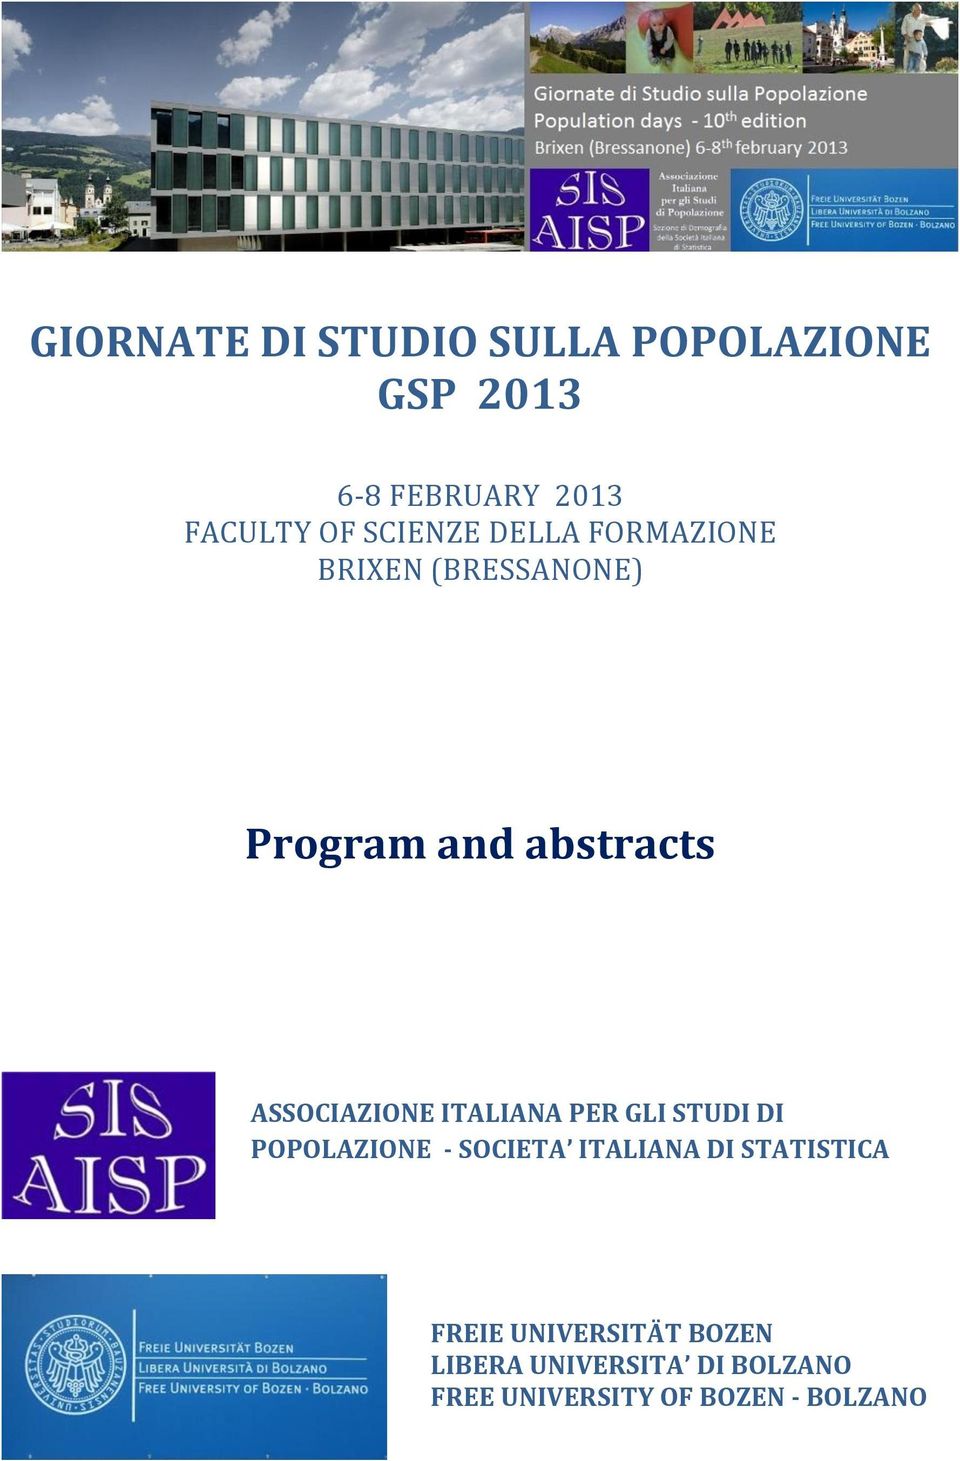 ASSOCIAZIONE ITALIANA PER GLI STUDI DI POPOLAZIONE - SOCIETA ITALIANA DI